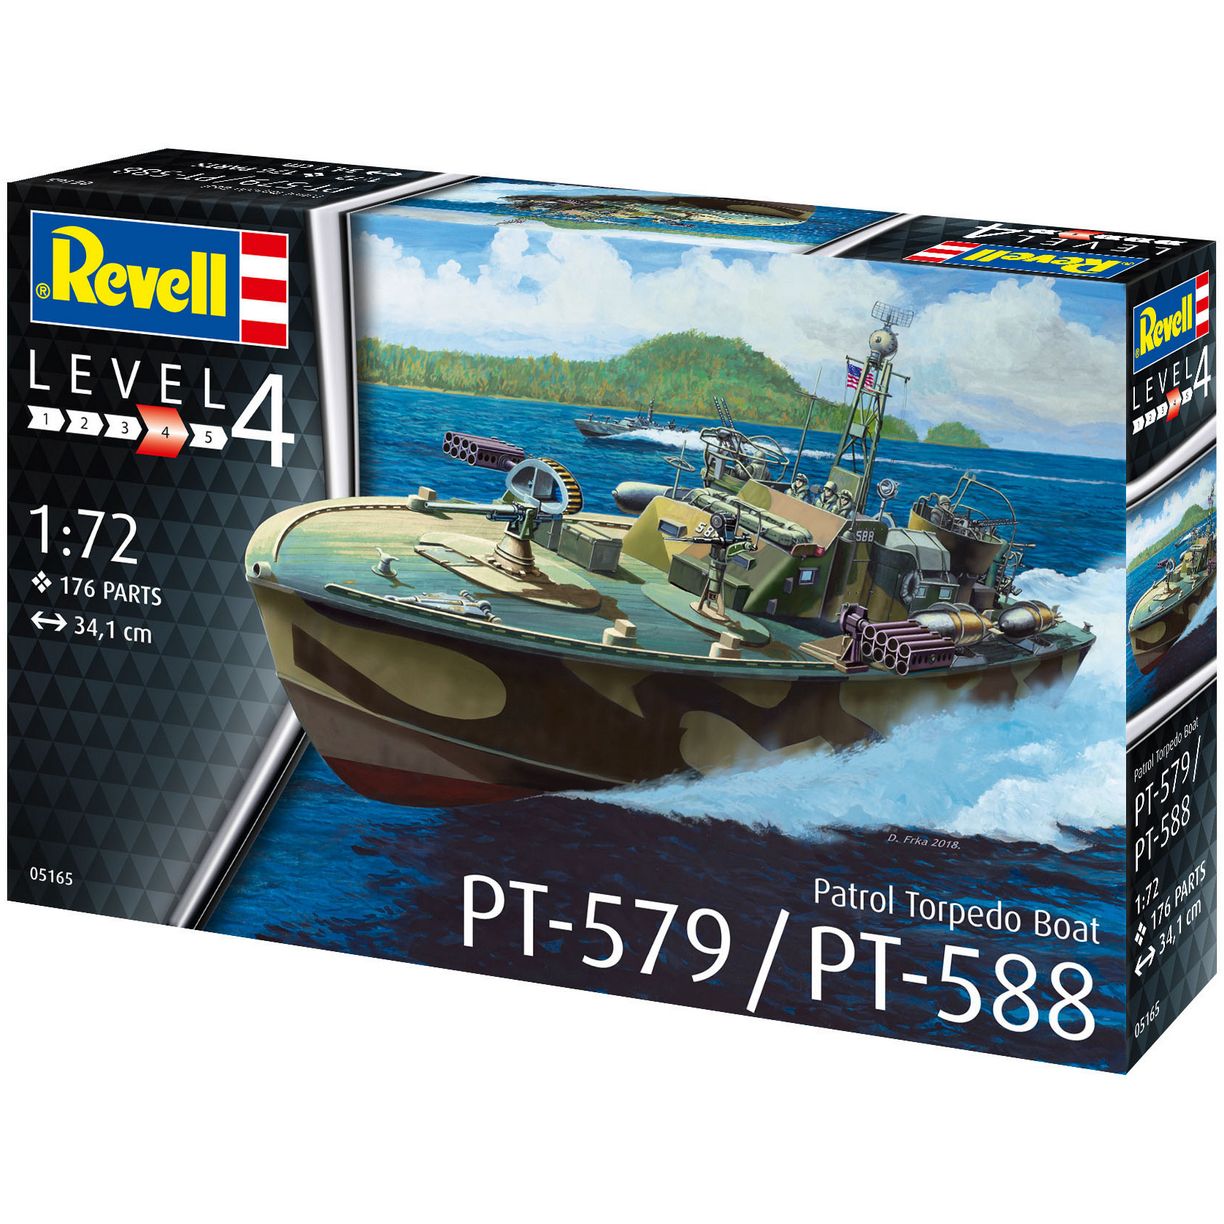 Збірна модель катера Revell Patrol Torpedo Boat PT-579 / PT-588, рівень 4, масштаб 1:72, 176 деталей (RVL-05165) - фото 1